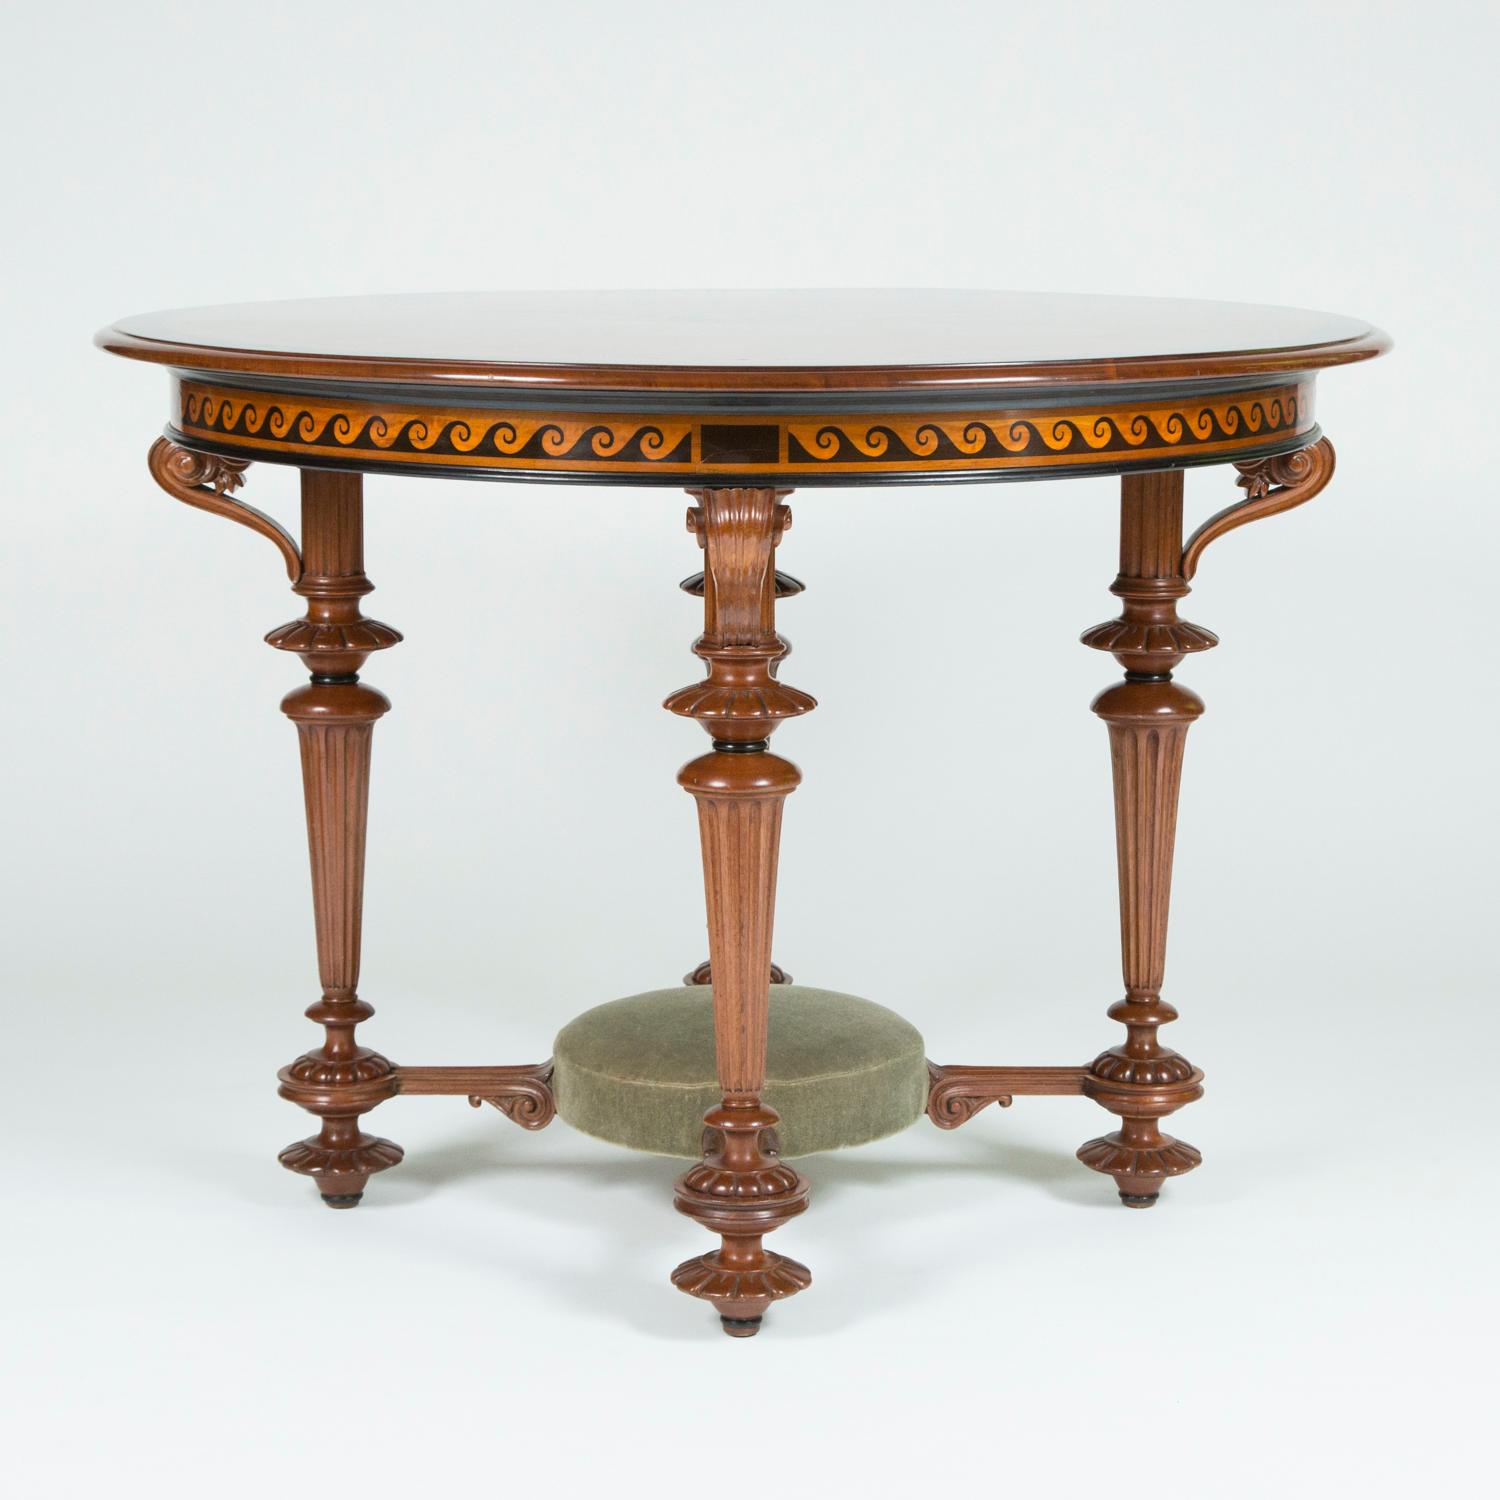 Ein feiner, runder, geschnitzter Nussbaumtisch mit Intarsien aus klassischen Motiven. 

Die Platte ist in Wurzelnuss furniert, mit einem zentralen 8-zackigen Stern aus Intarsien, der von Palmetten umgeben ist, die strahlenförmig in florale